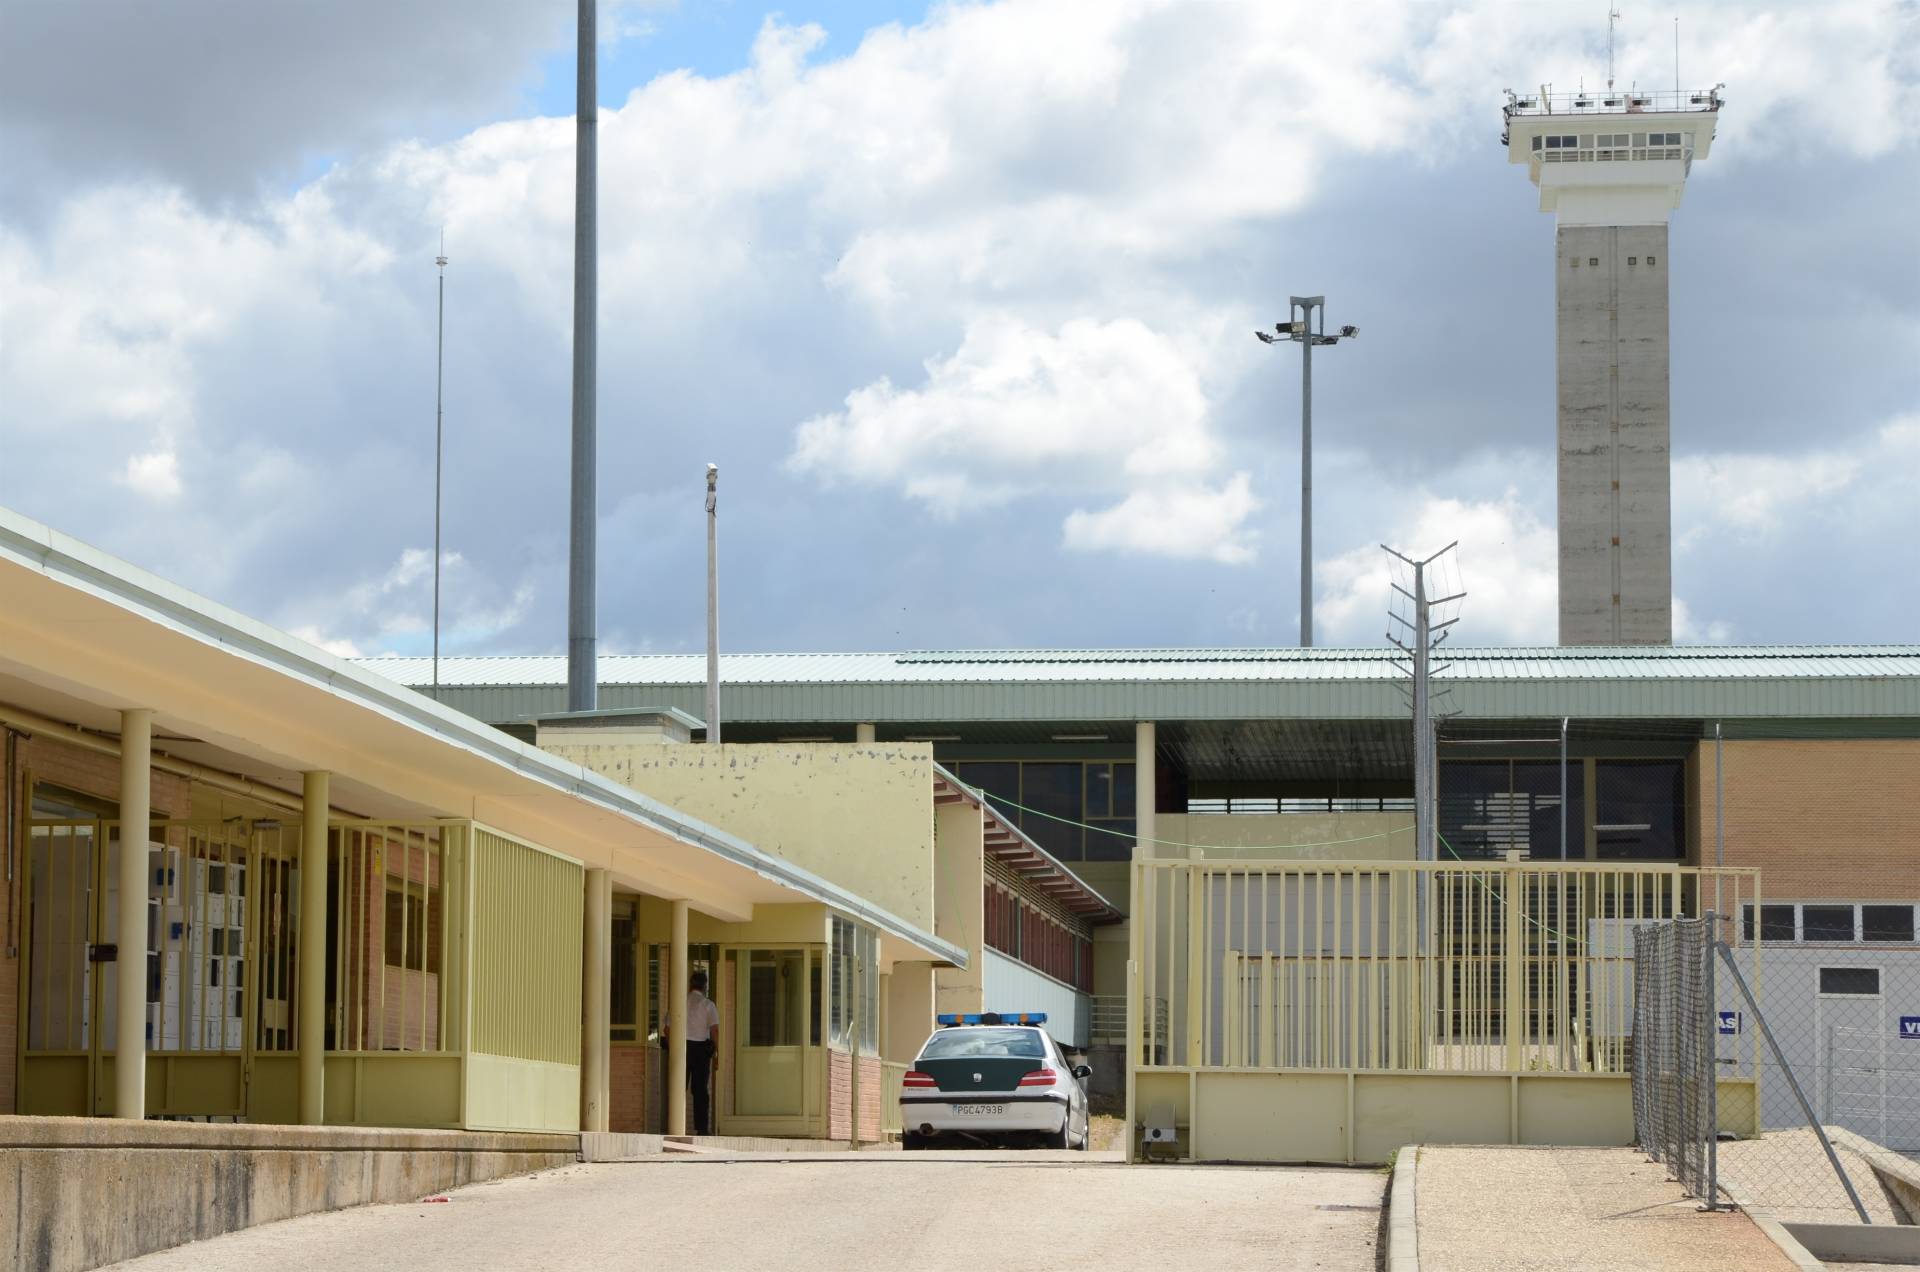 Centro penitenciario de Soto del Real (Madrid), con su característica torre de vigilancia.